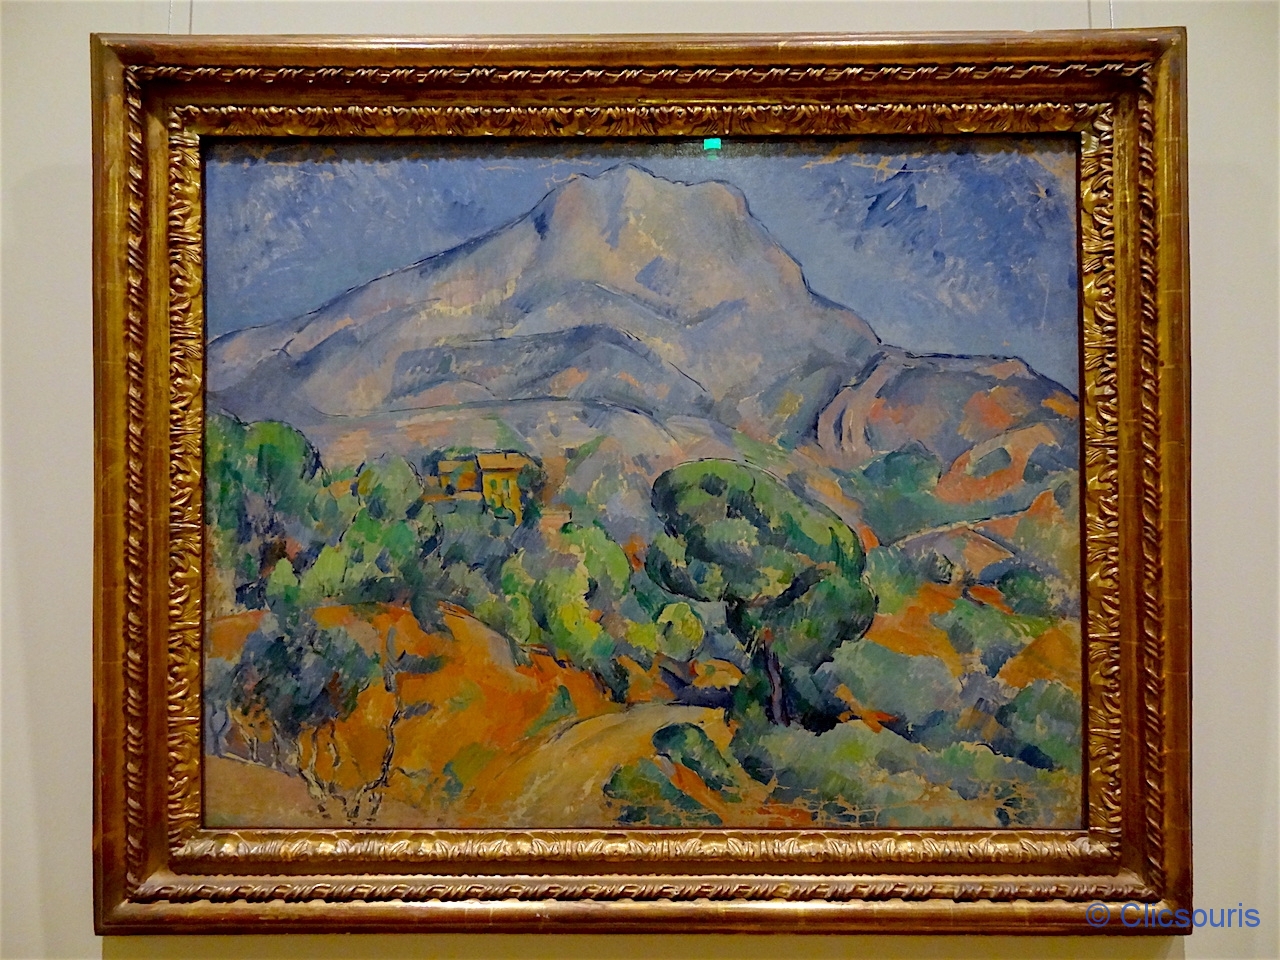 Saint-Pétersbourg état-major Cézanne